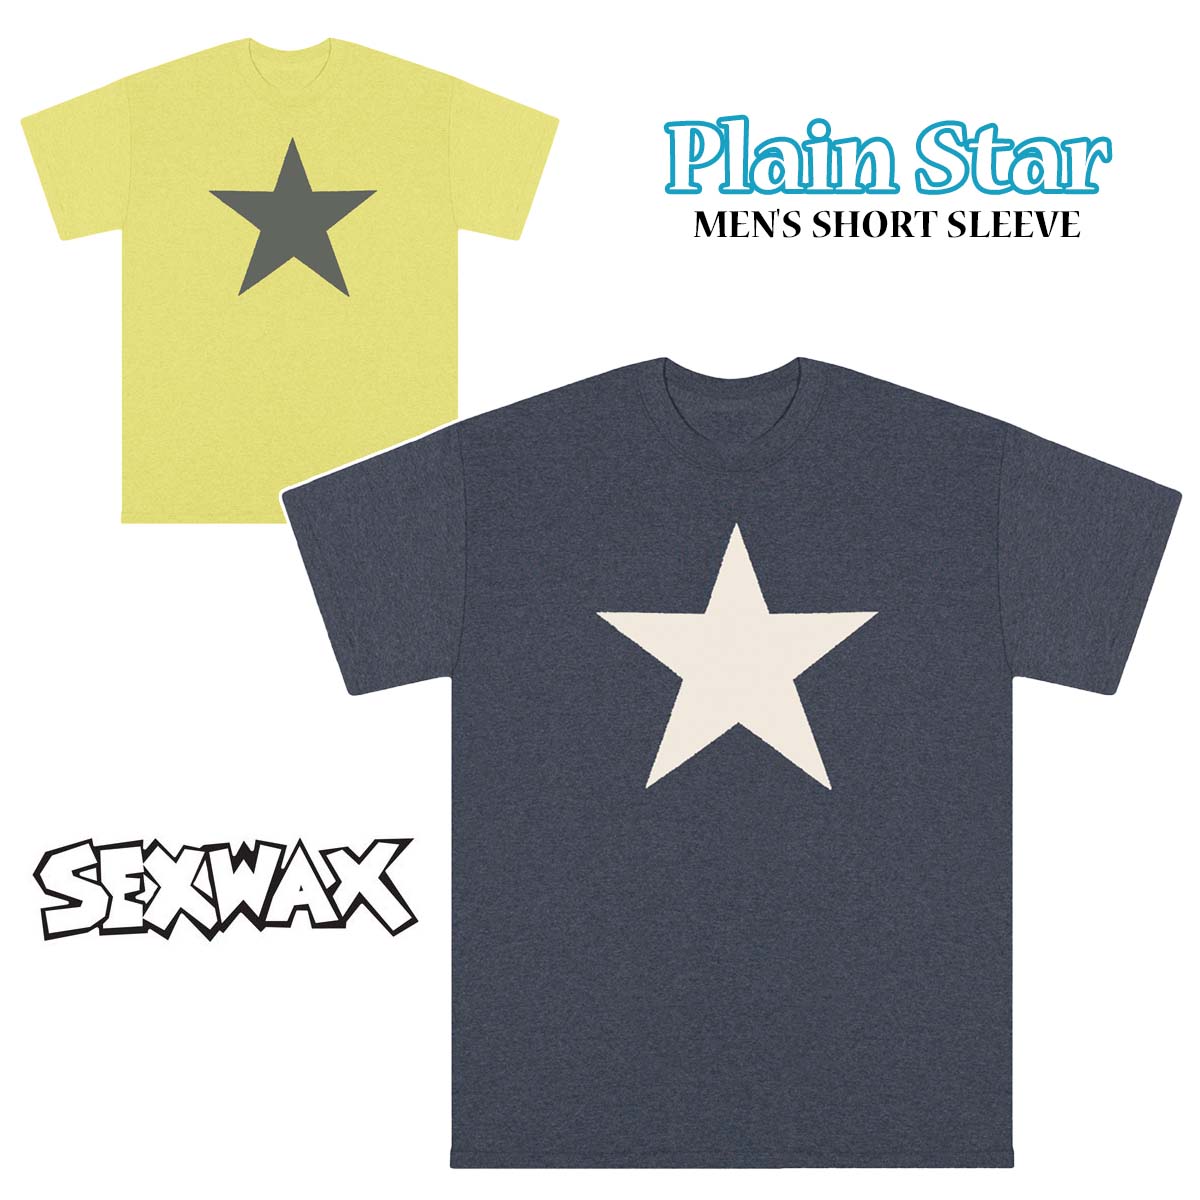 SEXWAX セックスワックス Tシャツ Plain Star Mens Regular Short Sleeve Tees 半袖 トップス サークルロゴ メンズ ユニセックス 品番 010131300010 日本正規品